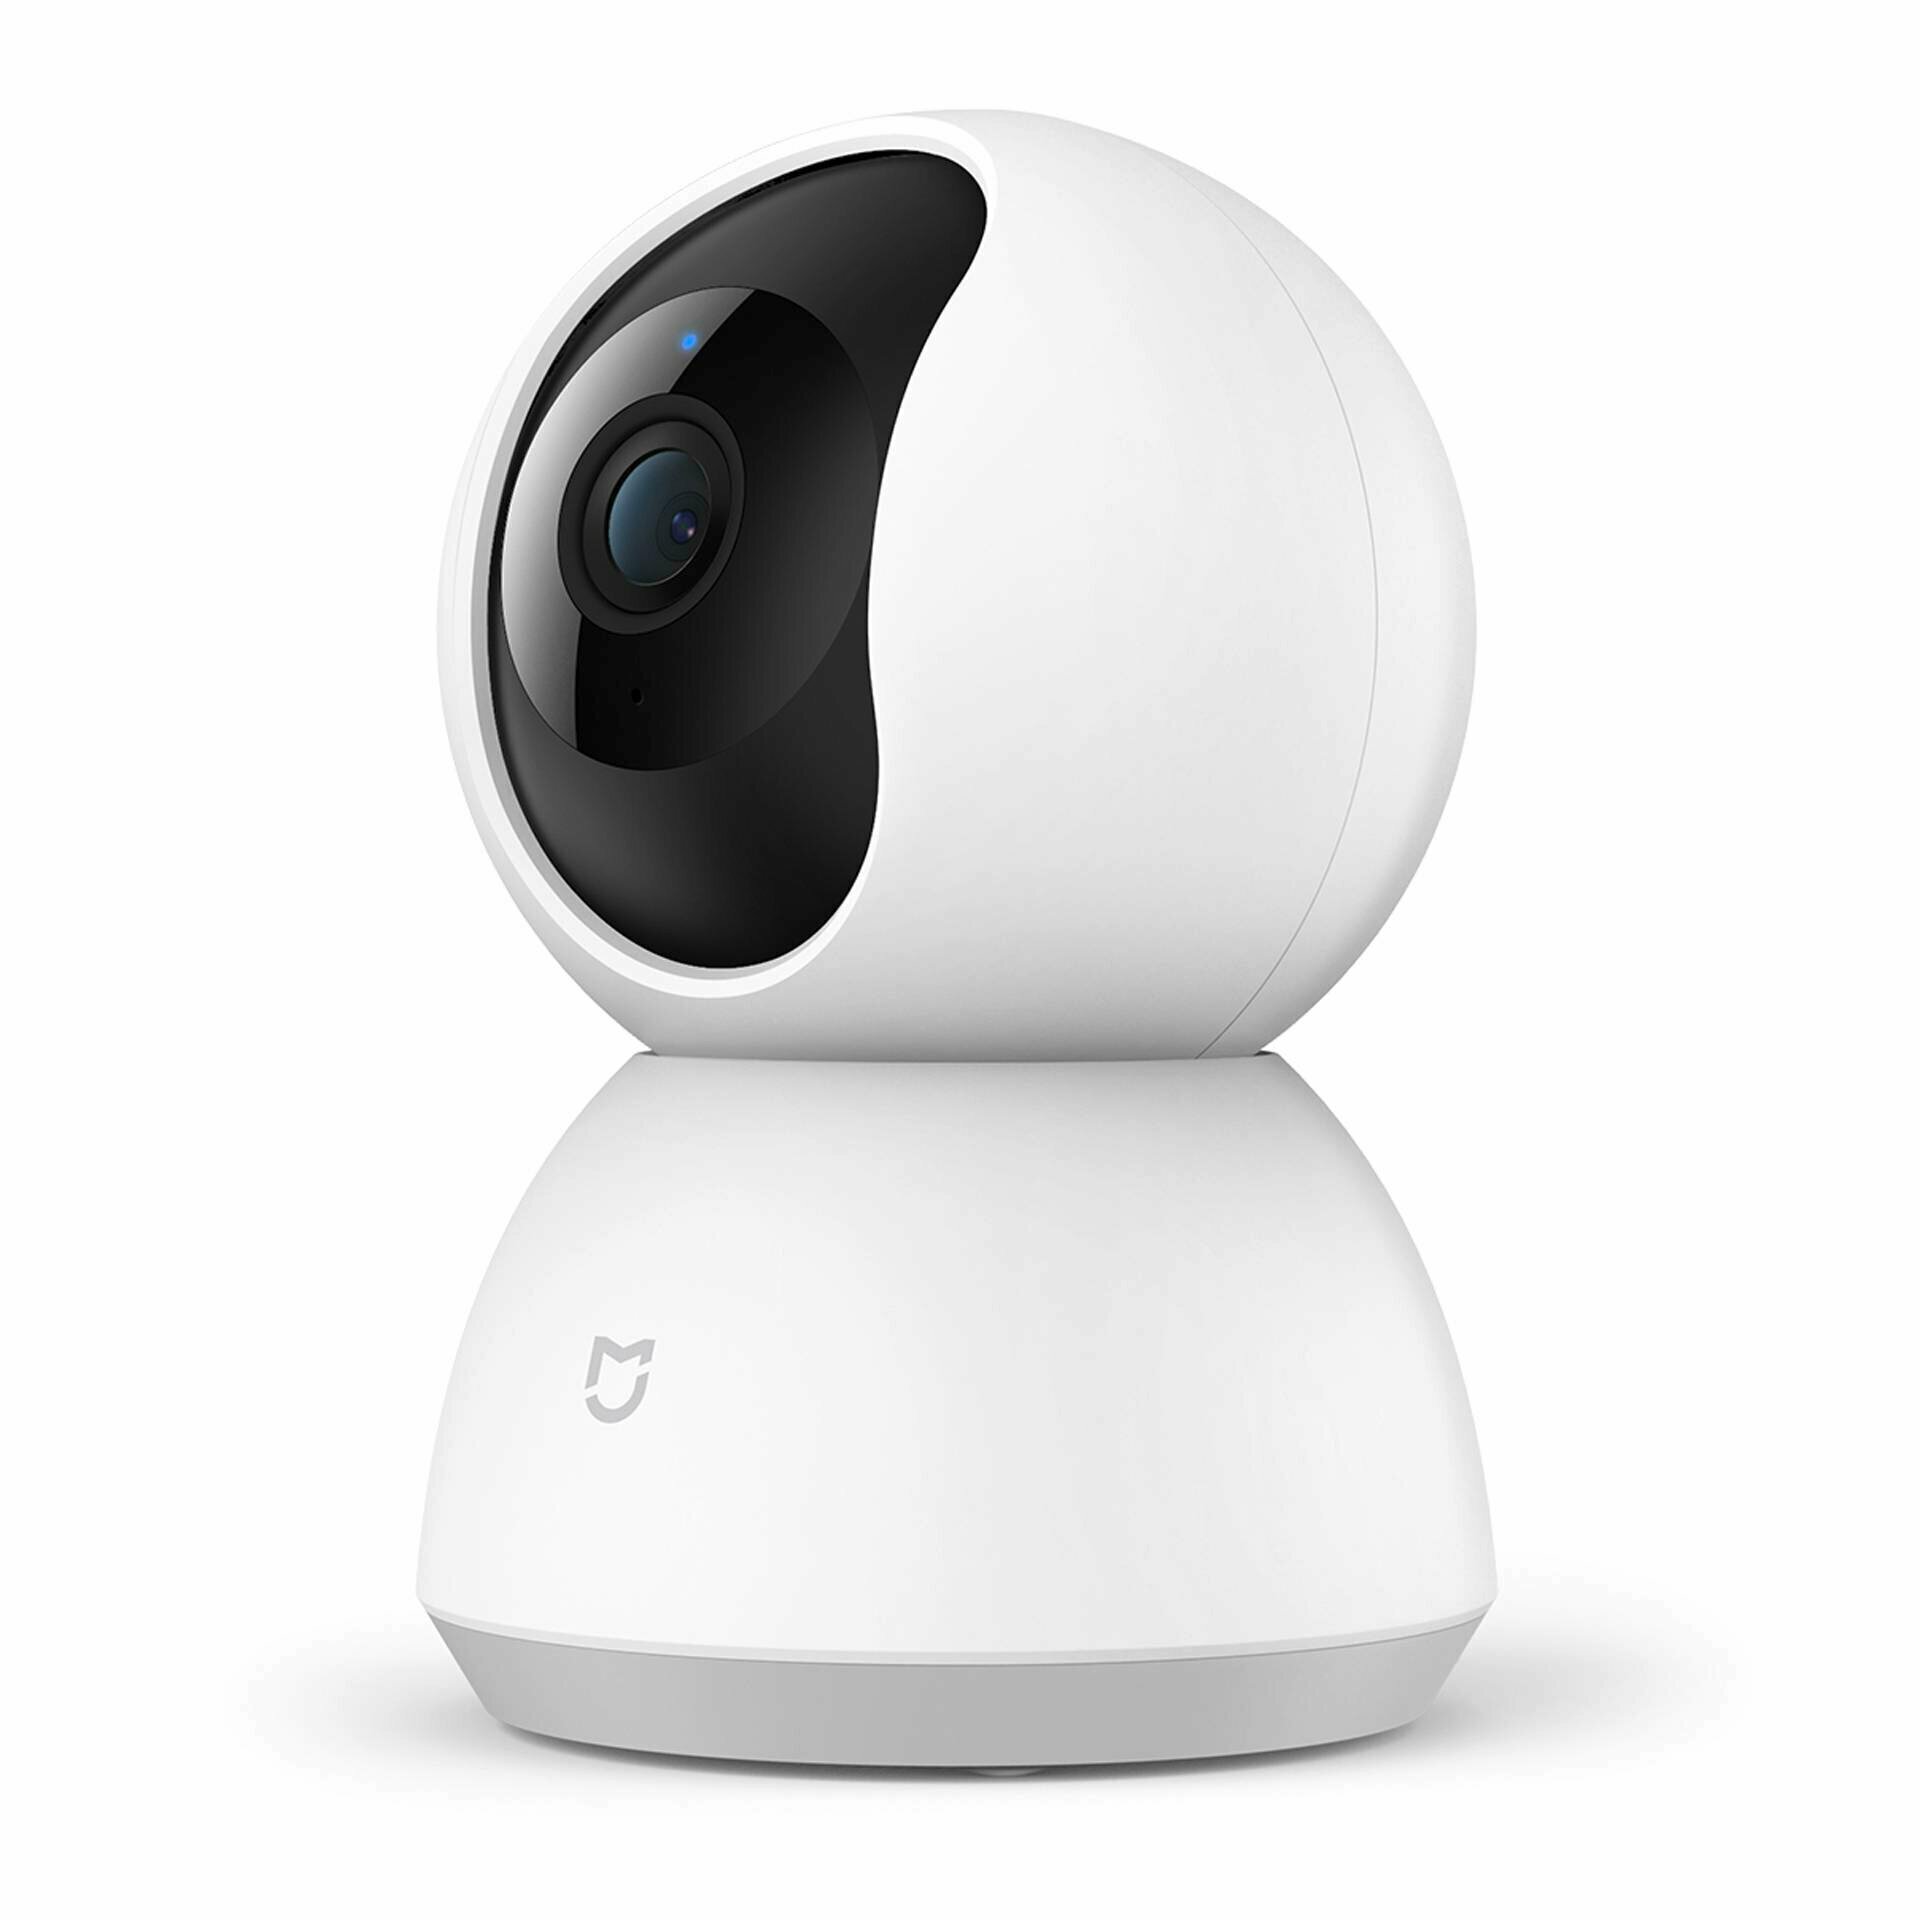 Камера видеонаблюдения Mijia 360° Home Security Camera 2K (MJSXJ09CM) CN, белый